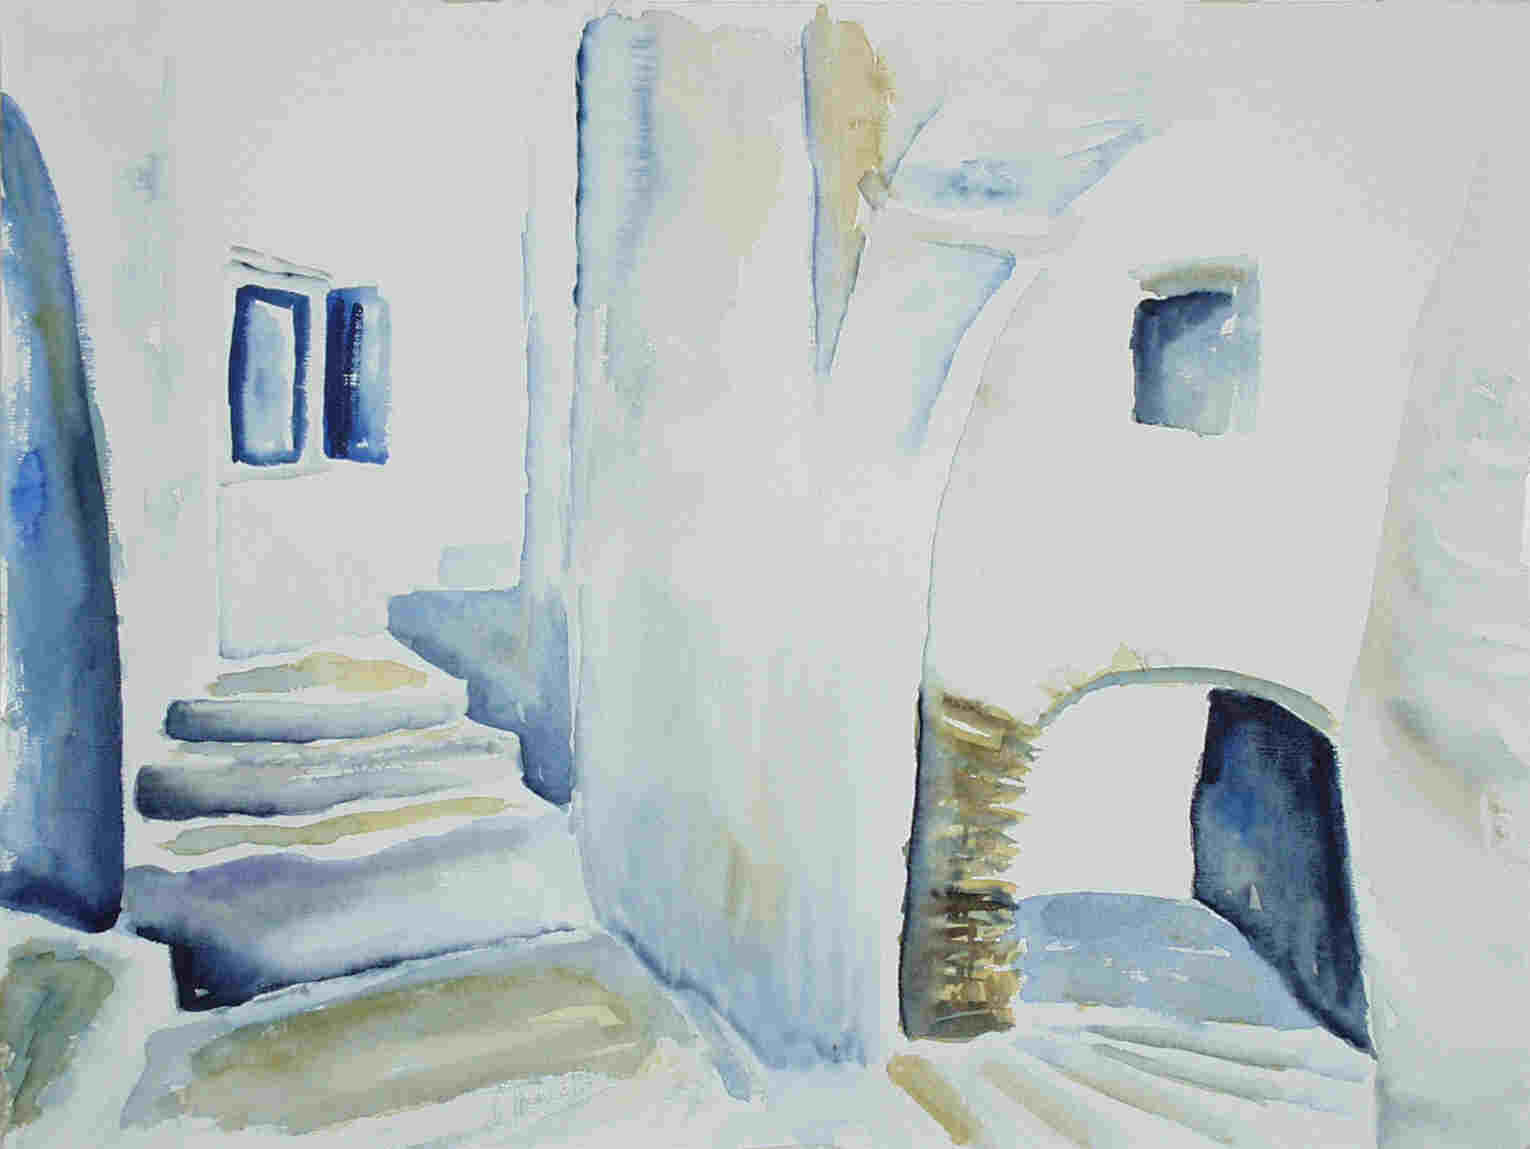 Griechische Treppe 1, 48x36 cm, 1997, ahr97_1k 35 KB